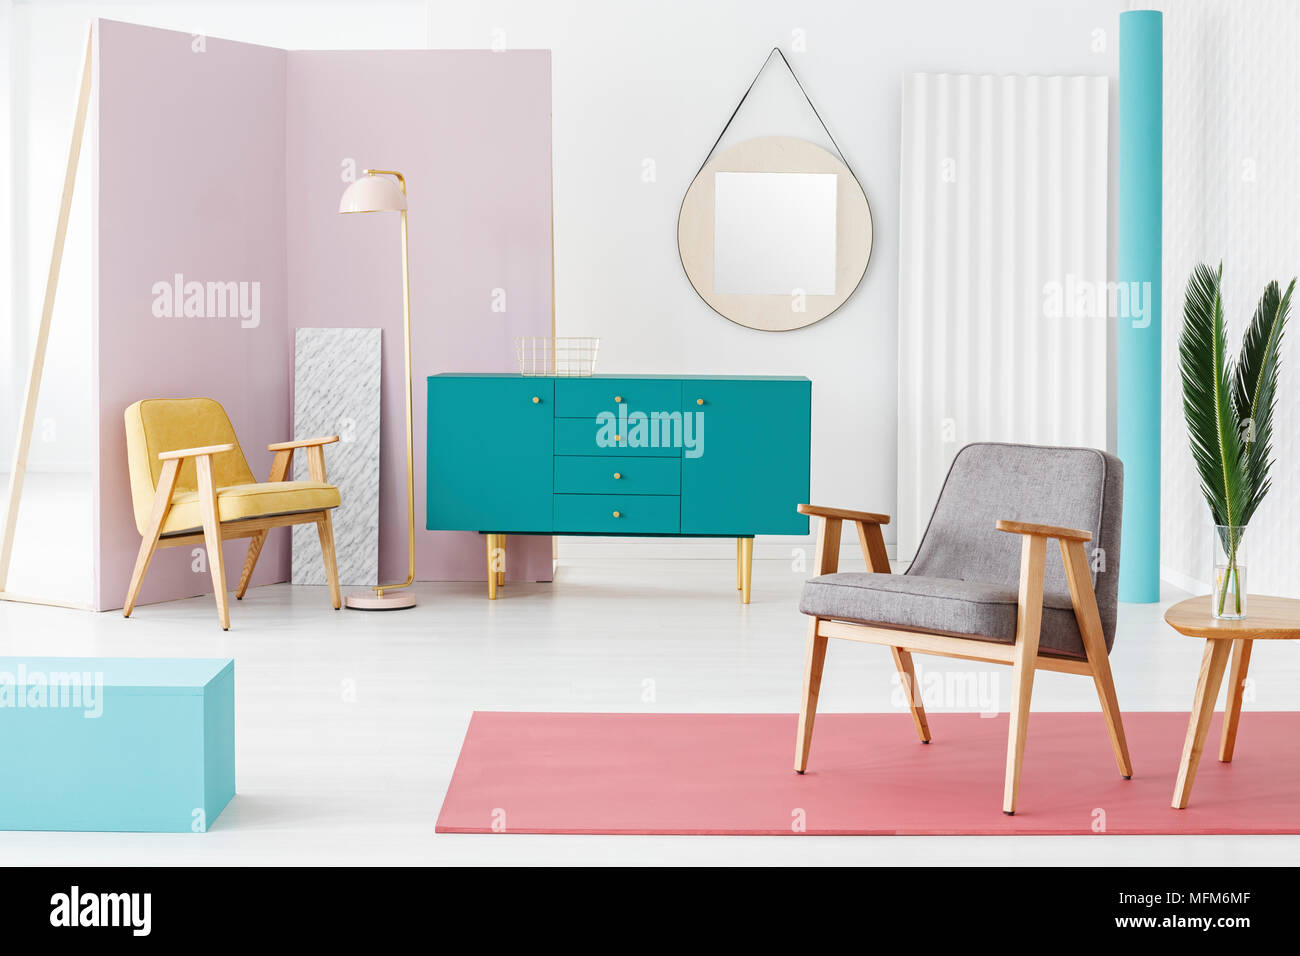 Composición creativa, muebles de madera y la combinación de colores para una idea moderna, hipster salón interior con elementos de diseño retro Foto de stock